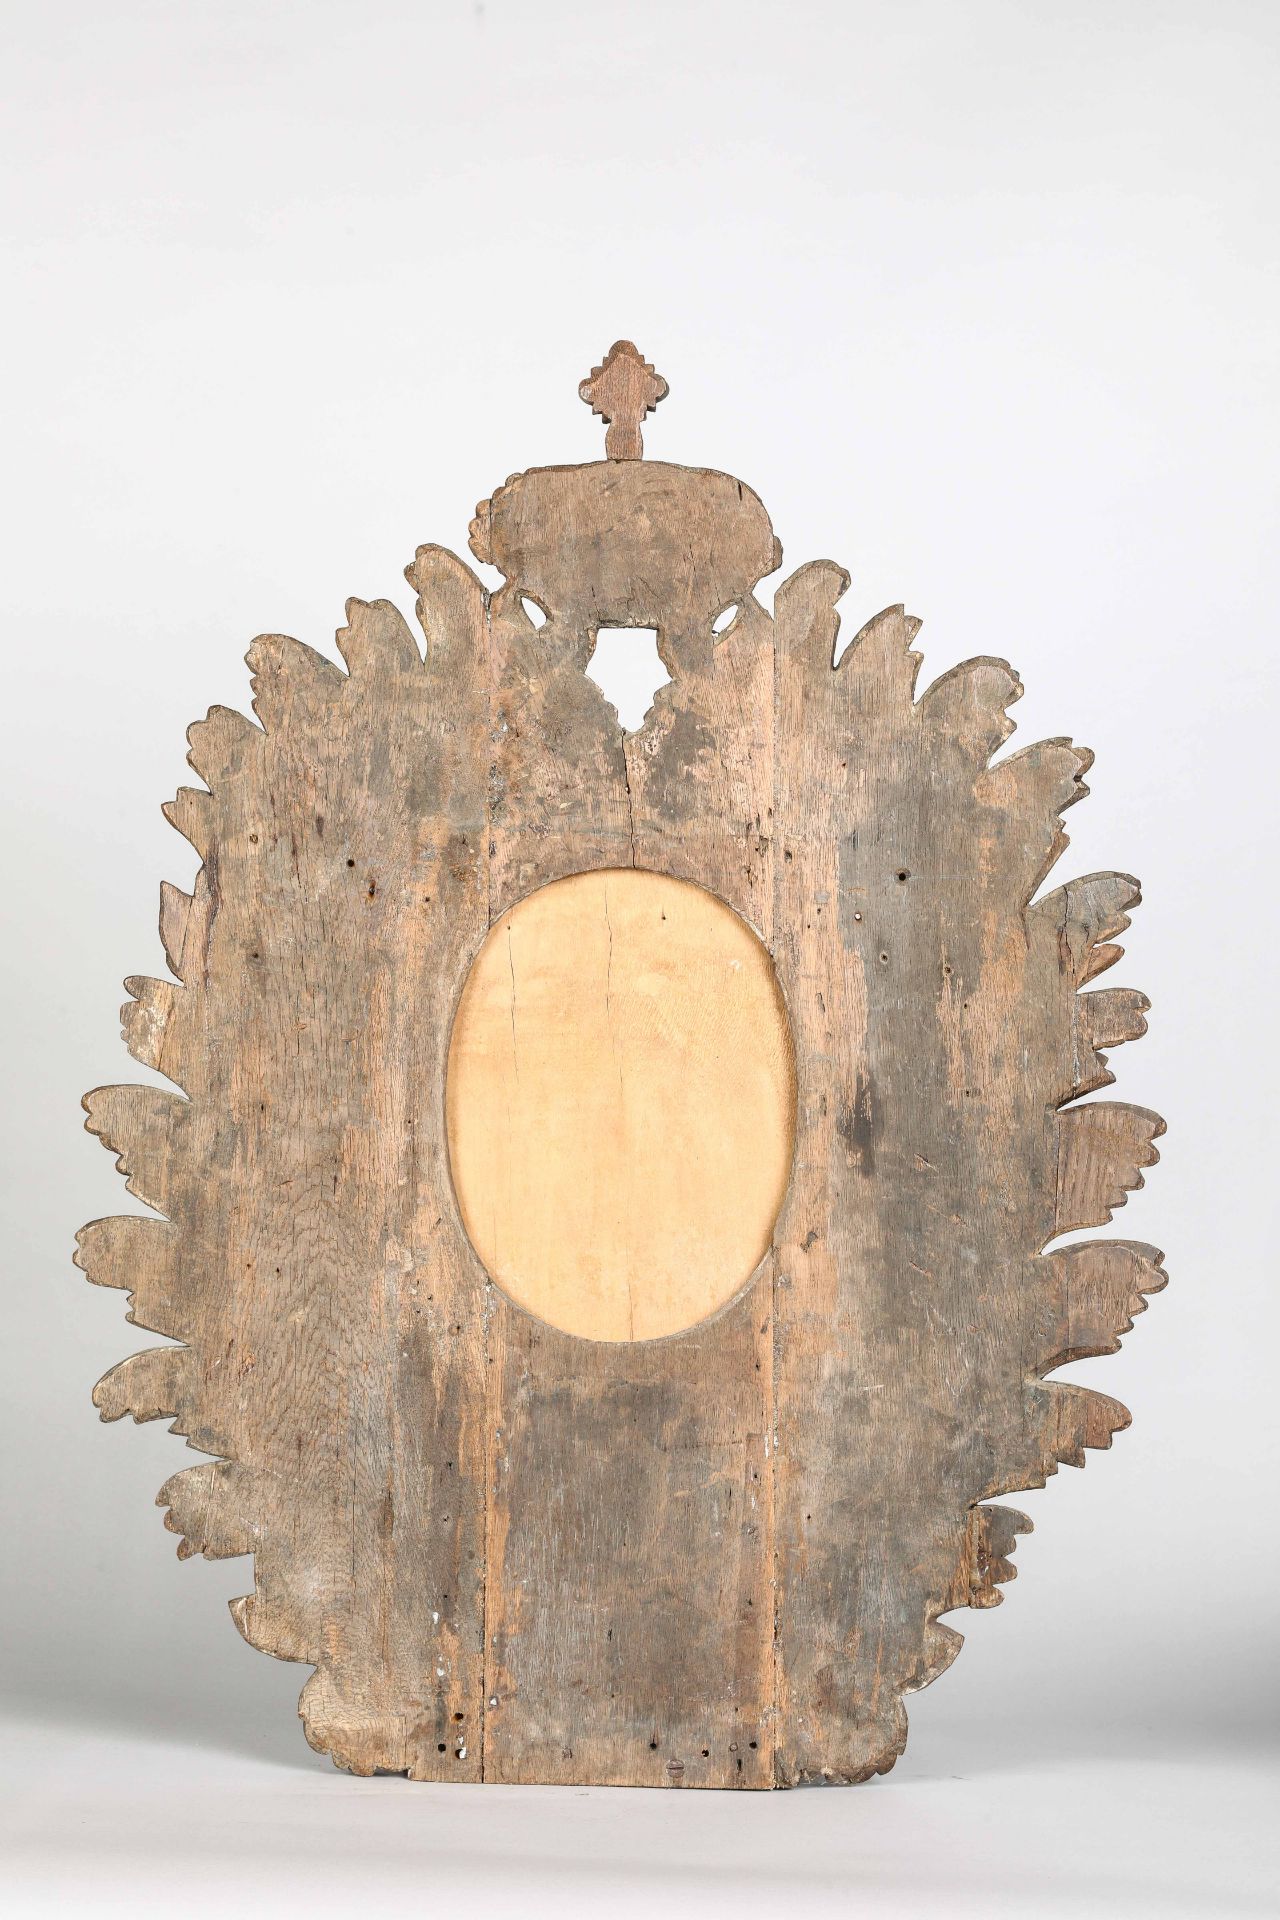 Paire de miroirs ovales a encadrements de guirlandes de feuillages surmontés d'une couronne Le - Image 3 of 4